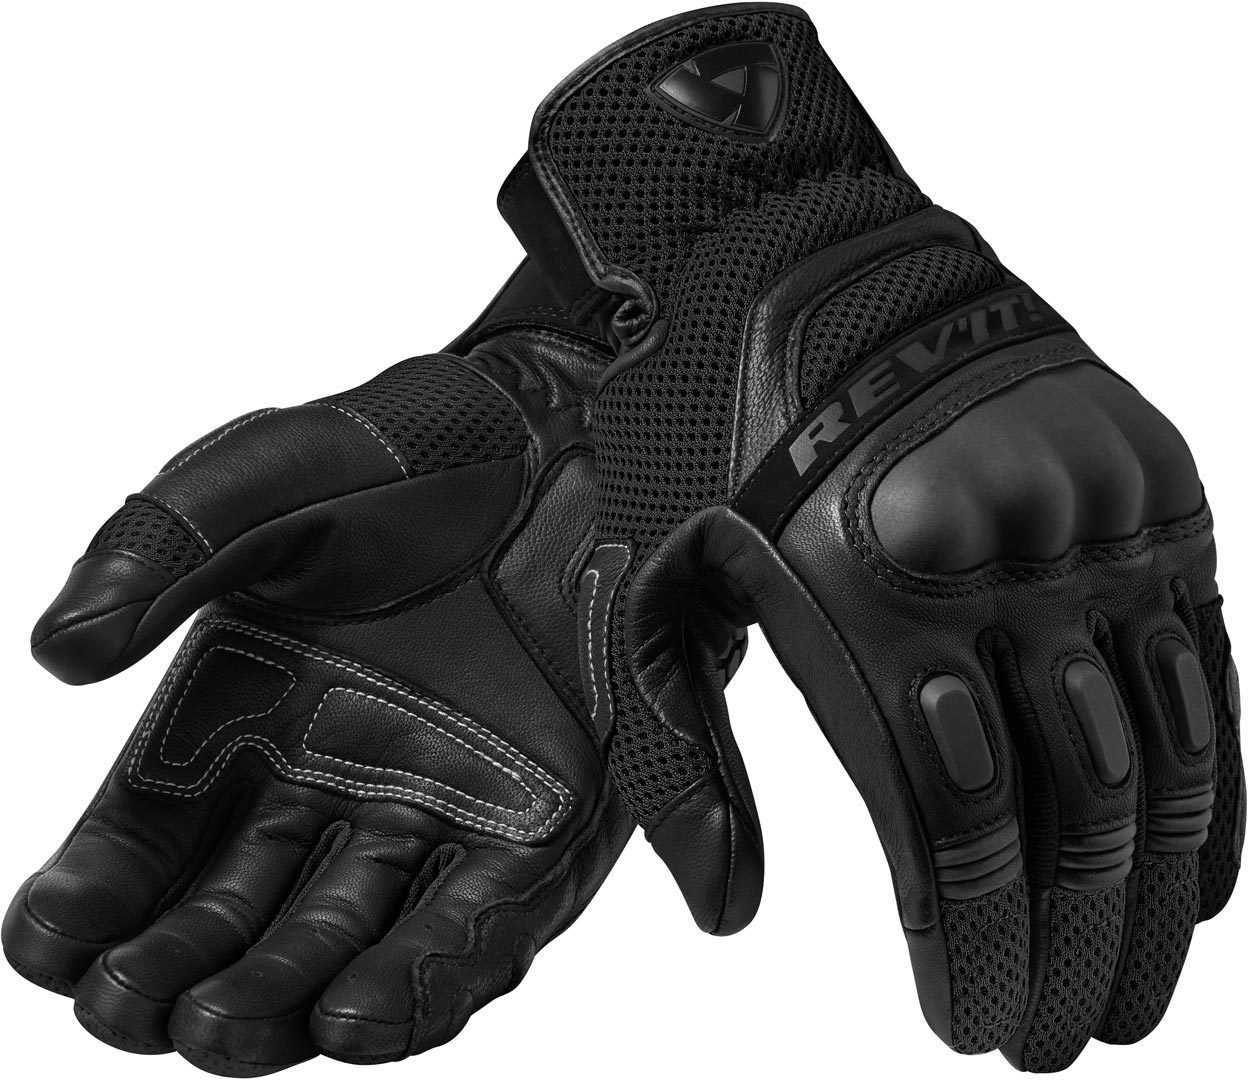 Motocross Motorradhandschuhe Dirt Handschuhe 3 Black/Black Revit